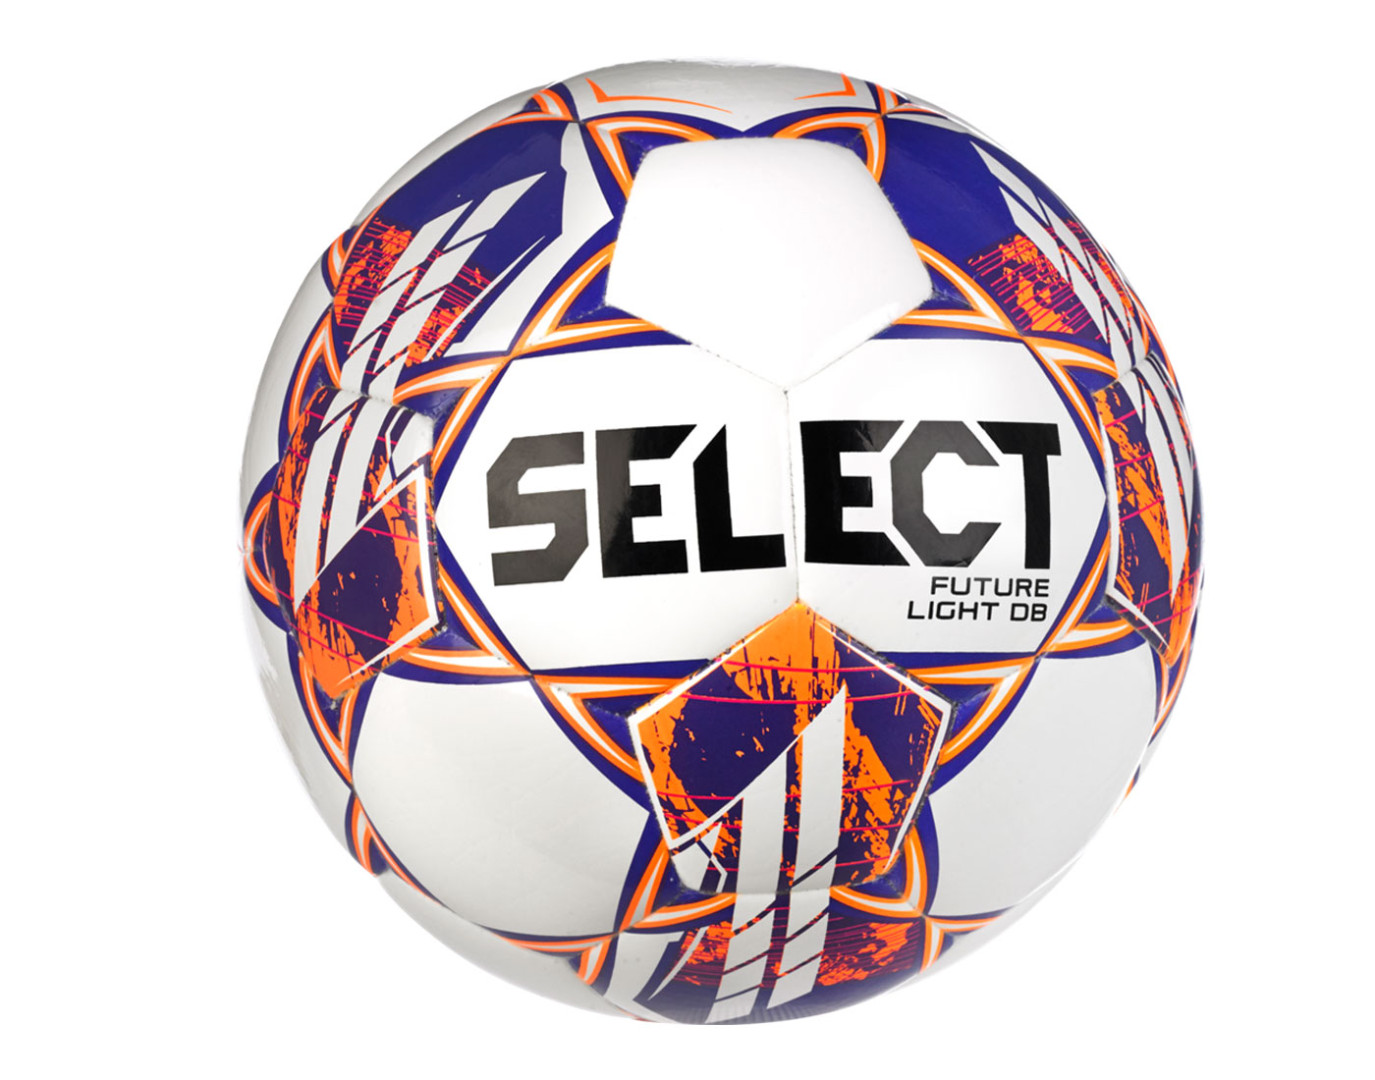 Fotbalový míč Select FB Future Light DB bílo/oranžová vel.3